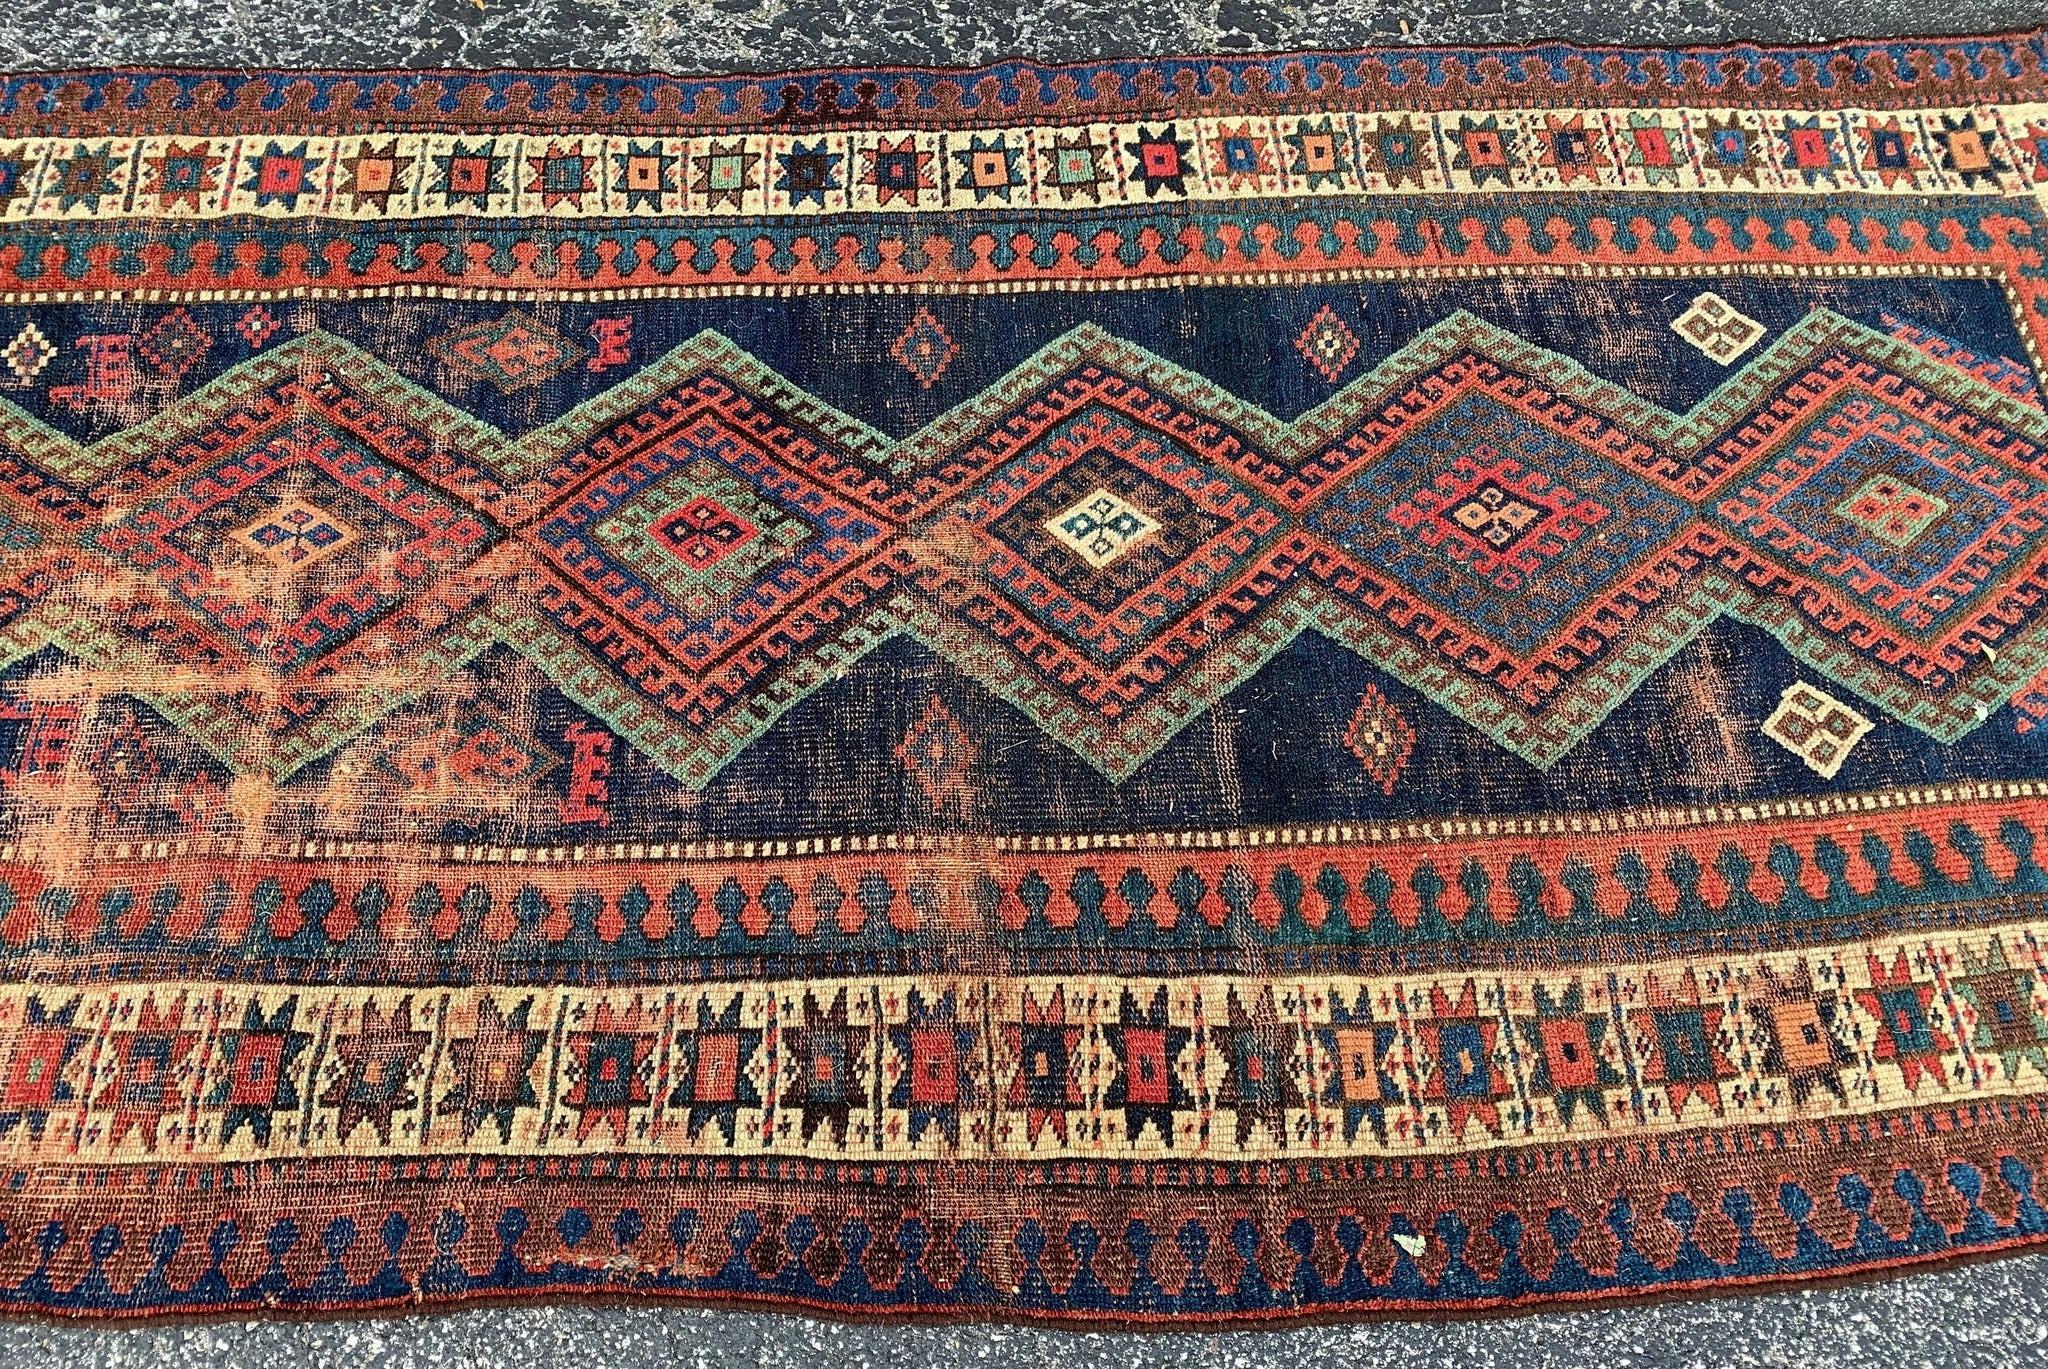 Jommi Mesmerizing Geometric Antique Tribal Rug Wide Runner (tapis géométrique antique tribal)

A propos de ce tapis : Un tapis tellement incroyable, l'un de mes 5 meilleurs tapis que nous ayons, c'est sûr ! Un bleu indigo profond qui fait ressortir